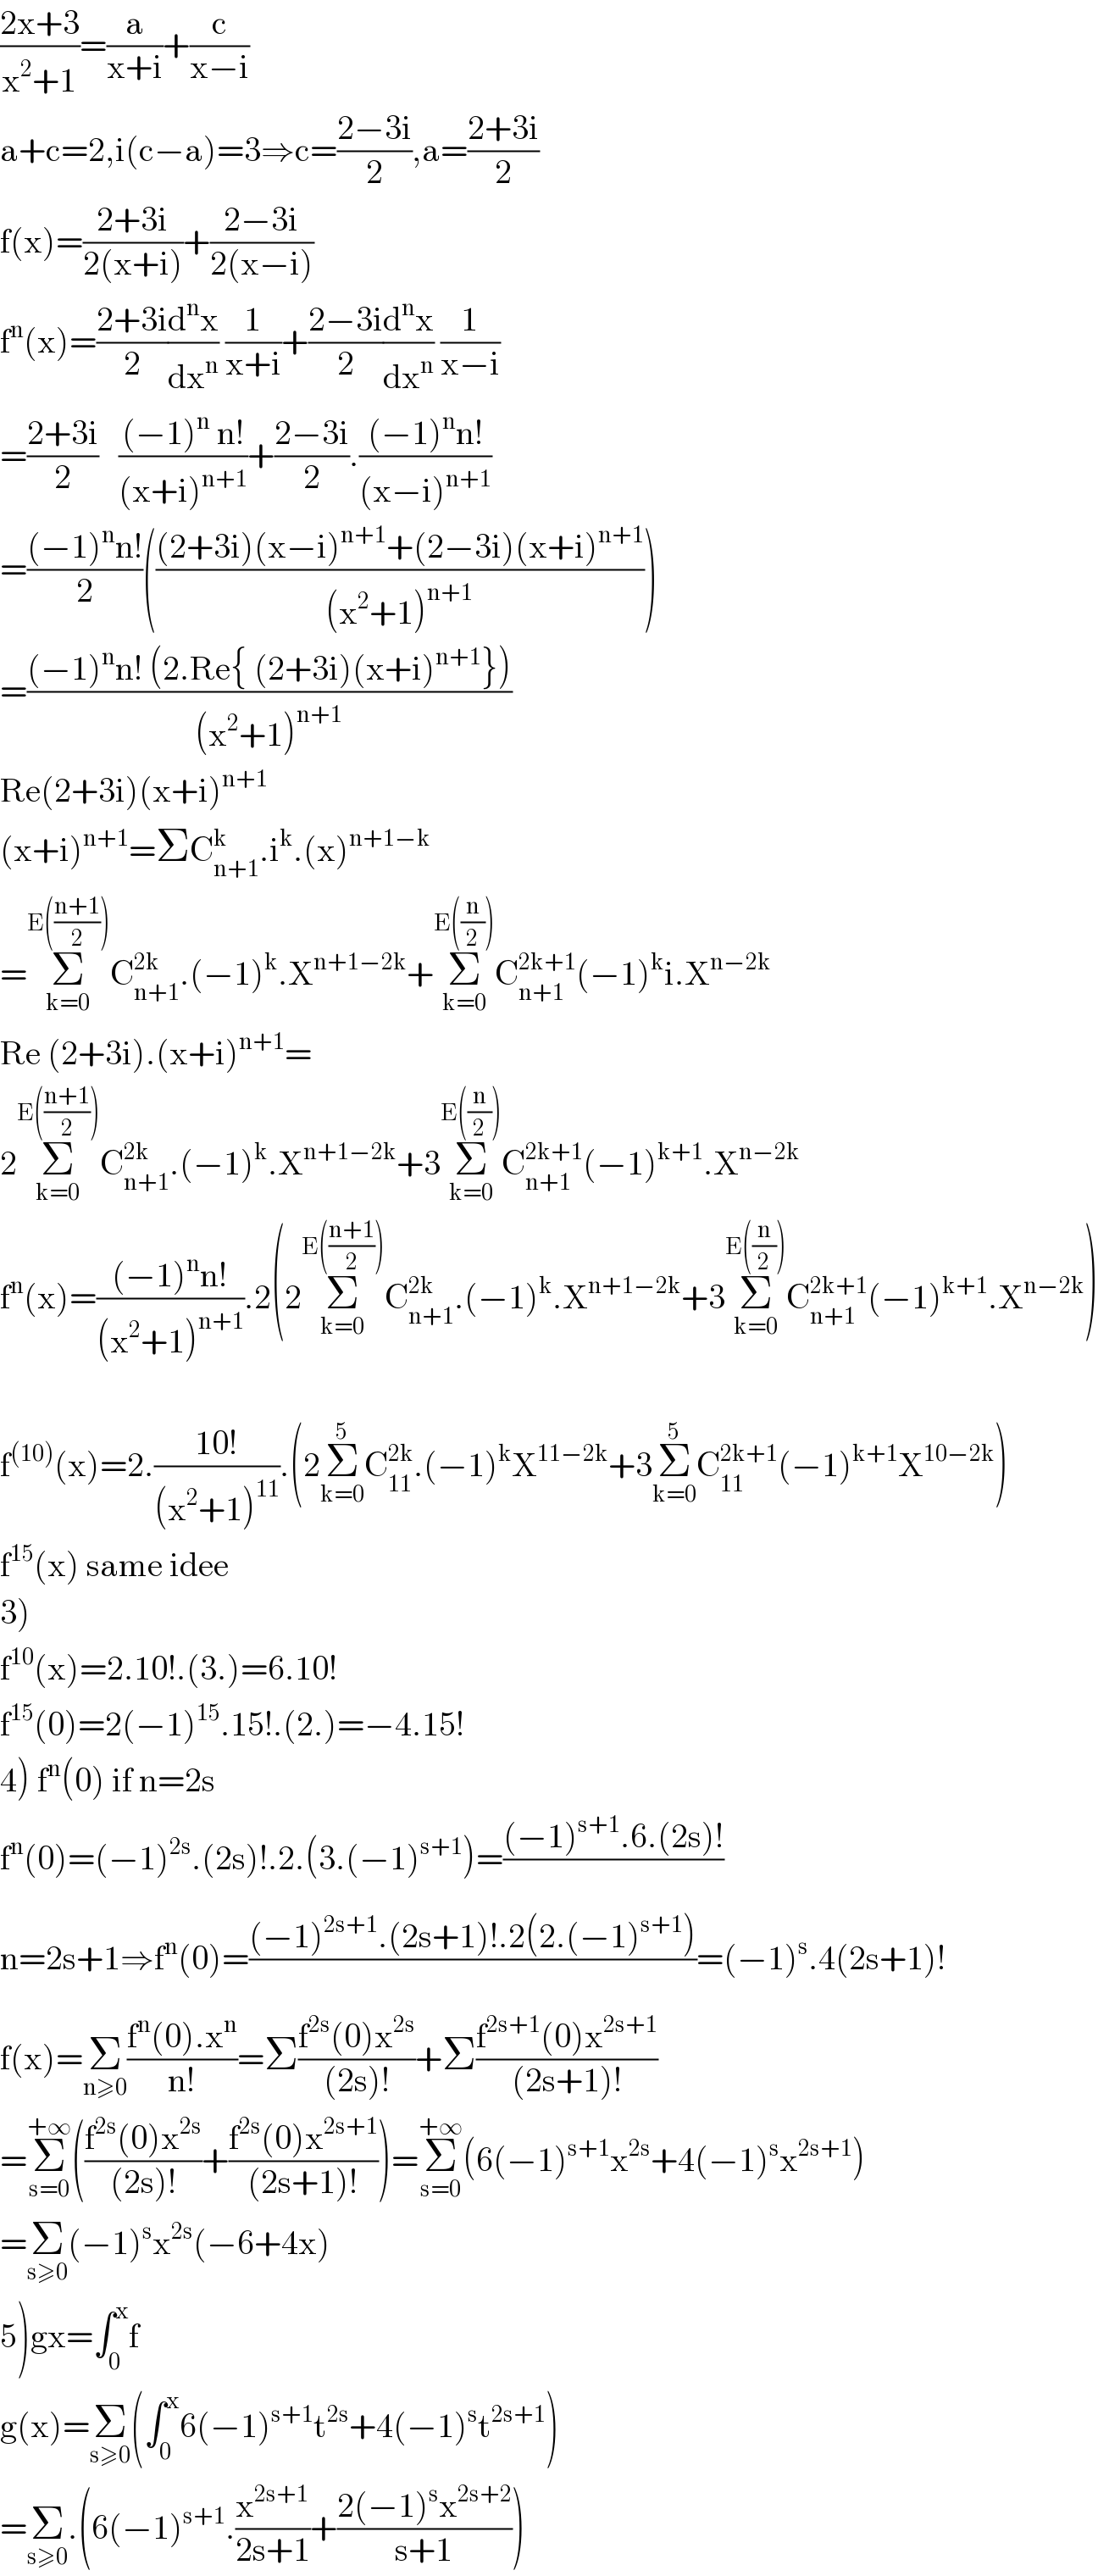 ((2x+3)/(x^2 +1))=(a/(x+i))+(c/(x−i))  a+c=2,i(c−a)=3⇒c=((2−3i)/2),a=((2+3i)/2)  f(x)=((2+3i)/(2(x+i)))+((2−3i)/(2(x−i)))  f^n (x)=((2+3i)/2)(d^n x/dx^n ) (1/(x+i))+((2−3i)/2)(d^n x/dx^n ) (1/(x−i))  =((2+3i)/2)   (((−1)^n  n!)/((x+i)^(n+1) ))+((2−3i)/2).(((−1)^n n!)/((x−i)^(n+1) ))  =(((−1)^n n!)/2)((((2+3i)(x−i)^(n+1) +(2−3i)(x+i)^(n+1) )/((x^2 +1)^(n+1) )))  =(((−1)^n n! (2.Re{ (2+3i)(x+i)^(n+1) }))/((x^2 +1)^(n+1) ))  Re(2+3i)(x+i)^(n+1)   (x+i)^(n+1) =ΣC_(n+1) ^k .i^k .(x)^(n+1−k)   =Σ_(k=0) ^(E(((n+1)/2))) C_(n+1) ^(2k) .(−1)^k .X^(n+1−2k) +Σ_(k=0) ^(E((n/2))) C_(n+1) ^(2k+1) (−1)^k i.X^(n−2k)   Re (2+3i).(x+i)^(n+1) =  2Σ_(k=0) ^(E(((n+1)/2))) C_(n+1) ^(2k) .(−1)^k .X^(n+1−2k) +3Σ_(k=0) ^(E((n/2))) C_(n+1) ^(2k+1) (−1)^(k+1) .X^(n−2k)   f^n (x)=(((−1)^n n!)/((x^2 +1)^(n+1) )).2(2Σ_(k=0) ^(E(((n+1)/2))) C_(n+1) ^(2k) .(−1)^k .X^(n+1−2k) +3Σ_(k=0) ^(E((n/2))) C_(n+1) ^(2k+1) (−1)^(k+1) .X^(n−2k) )    f^((10)) (x)=2.((10!)/((x^2 +1)^(11) )).(2Σ_(k=0) ^5 C_(11) ^(2k) .(−1)^k X^(11−2k) +3Σ_(k=0) ^5 C_(11) ^(2k+1) (−1)^(k+1) X^(10−2k) )  f^(15) (x) same idee  3)  f^(10) (x)=2.10!.(3.)=6.10!  f^(15) (0)=2(−1)^(15) .15!.(2.)=−4.15!  4) f^n (0) if n=2s  f^n (0)=(−1)^(2s) .(2s)!.2.(3.(−1)^(s+1) )=(((−1)^(s+1) .6.(2s)!)/)  n=2s+1⇒f^n (0)=(((−1)^(2s+1) .(2s+1)!.2(2.(−1)^(s+1) ))/)=(−1)^s .4(2s+1)!  f(x)=Σ_(n≥0) ((f^n (0).x^n )/(n!))=Σ((f^(2s) (0)x^(2s) )/((2s)!))+Σ((f^(2s+1) (0)x^(2s+1) )/((2s+1)!))  =Σ_(s=0) ^(+∞) (((f^(2s) (0)x^(2s) )/((2s)!))+((f^(2s) (0)x^(2s+1) )/((2s+1)!)))=Σ_(s=0) ^(+∞) (6(−1)^(s+1) x^(2s) +4(−1)^s x^(2s+1) )  =Σ_(s≥0) (−1)^s x^(2s) (−6+4x)  5)gx=∫_0 ^x f   g(x)=Σ_(s≥0) (∫_0 ^x 6(−1)^(s+1) t^(2s) +4(−1)^s t^(2s+1) )  =Σ_(s≥0) .(6(−1)^(s+1) .(x^(2s+1) /(2s+1))+((2(−1)^s x^(2s+2) )/(s+1)))  